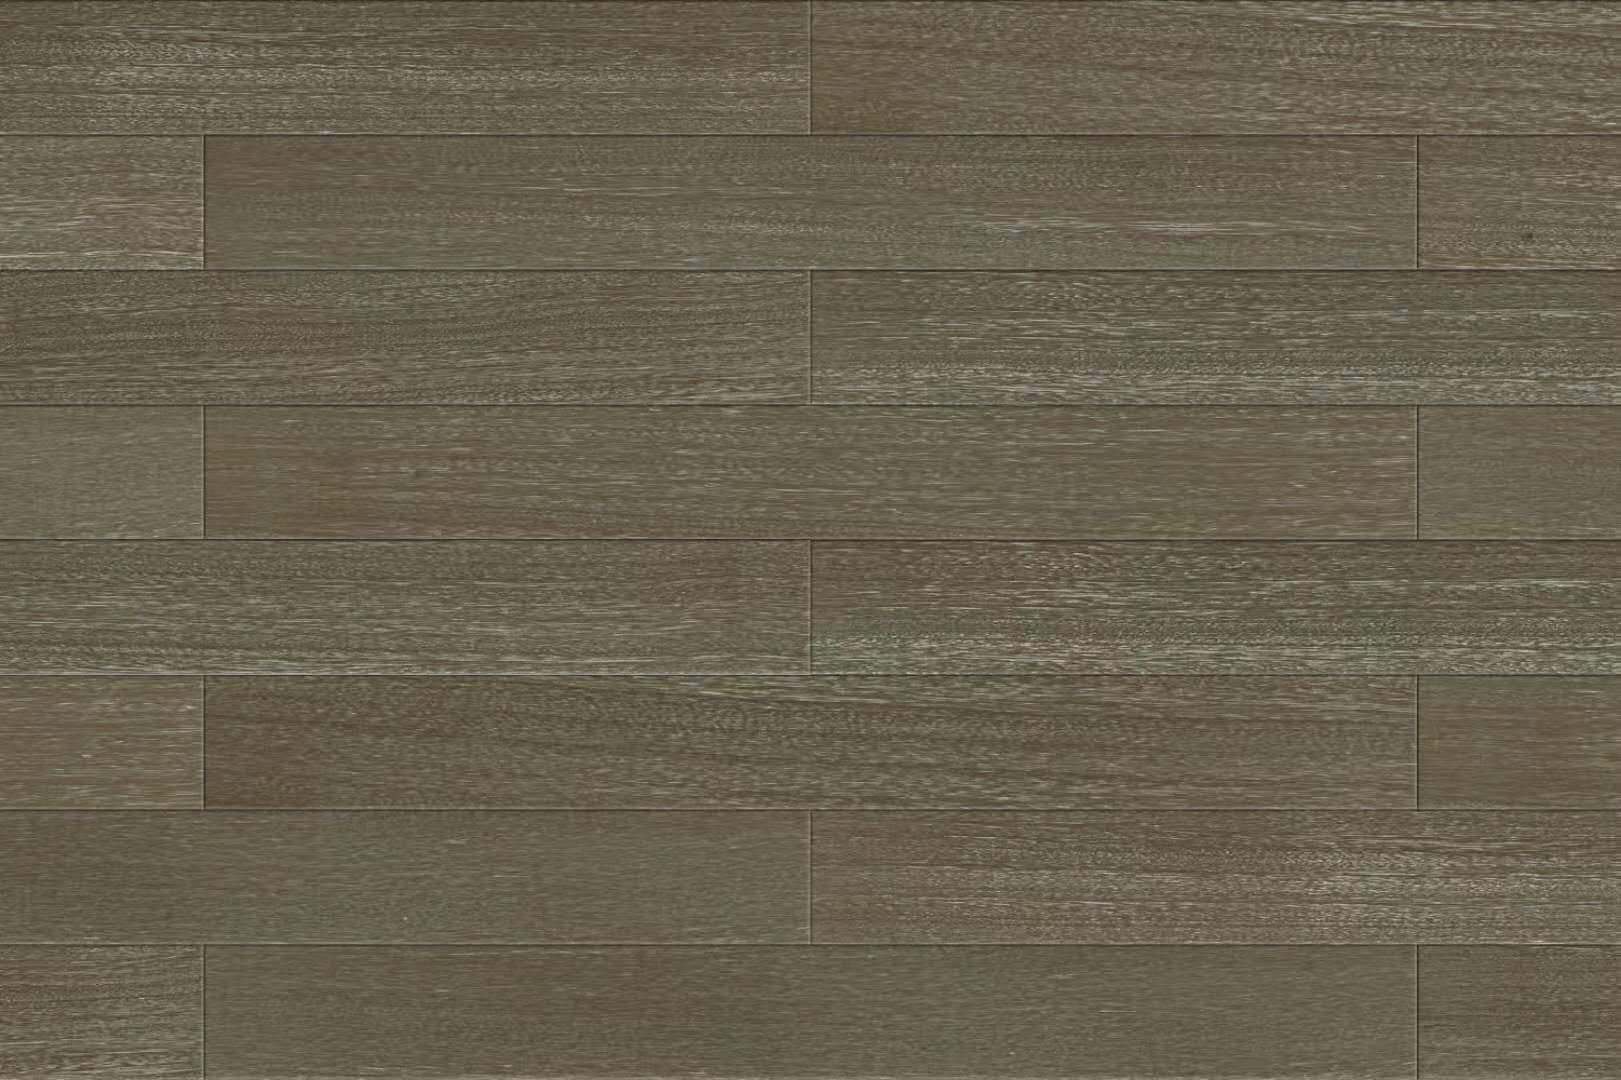 灰色格里斯实木地板 复合地板 塑胶地板 多层地板 拼花地板 地暖地板 厂家直销 灰色格里斯实木地板手波纹图片